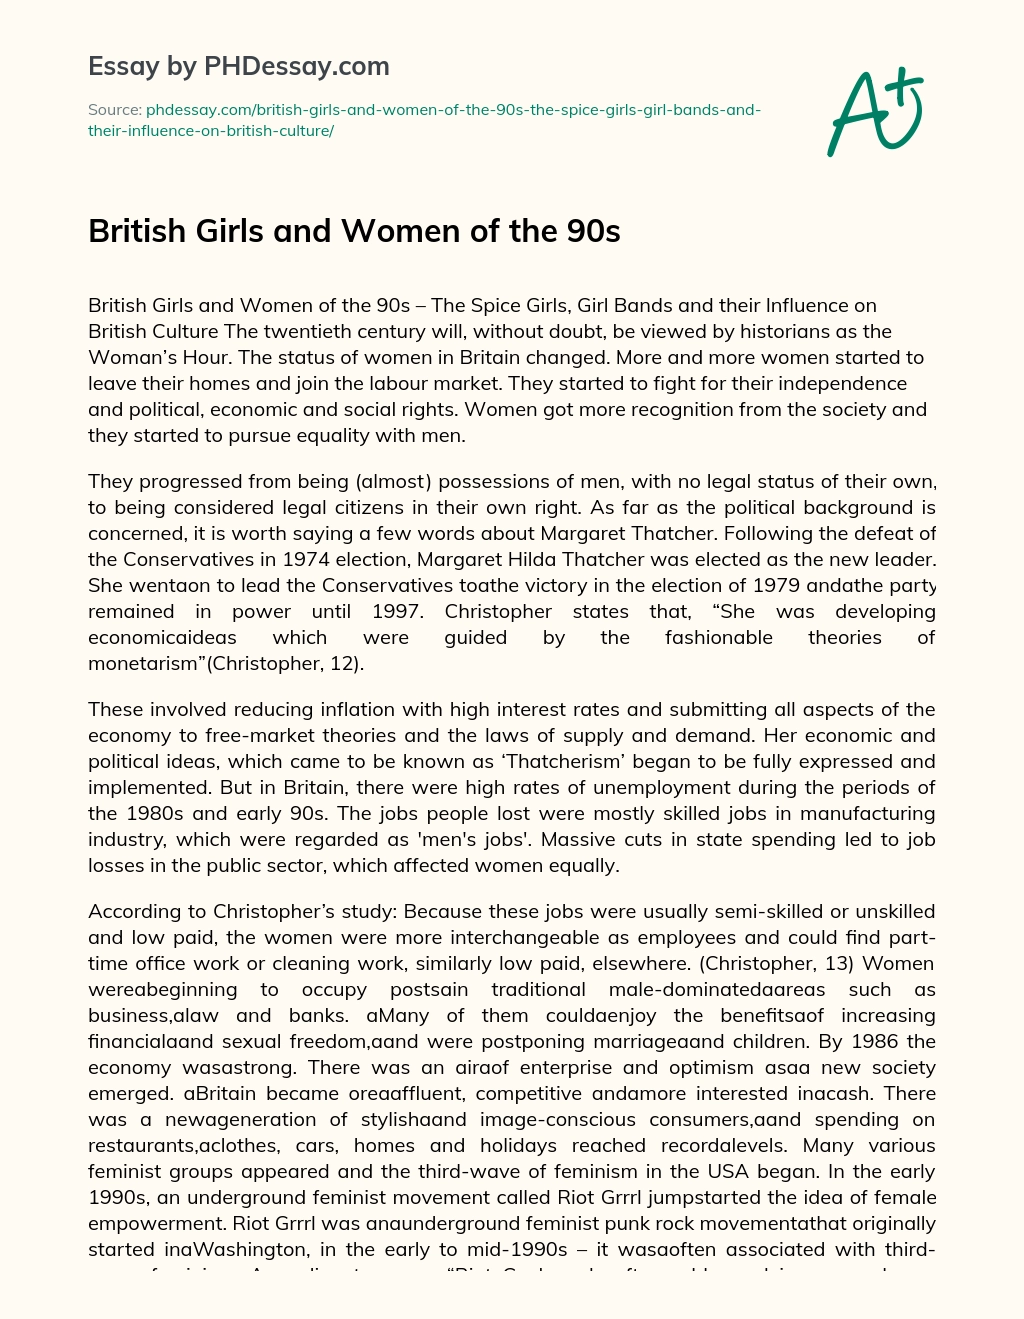 British Girls and Women of the 90s essay